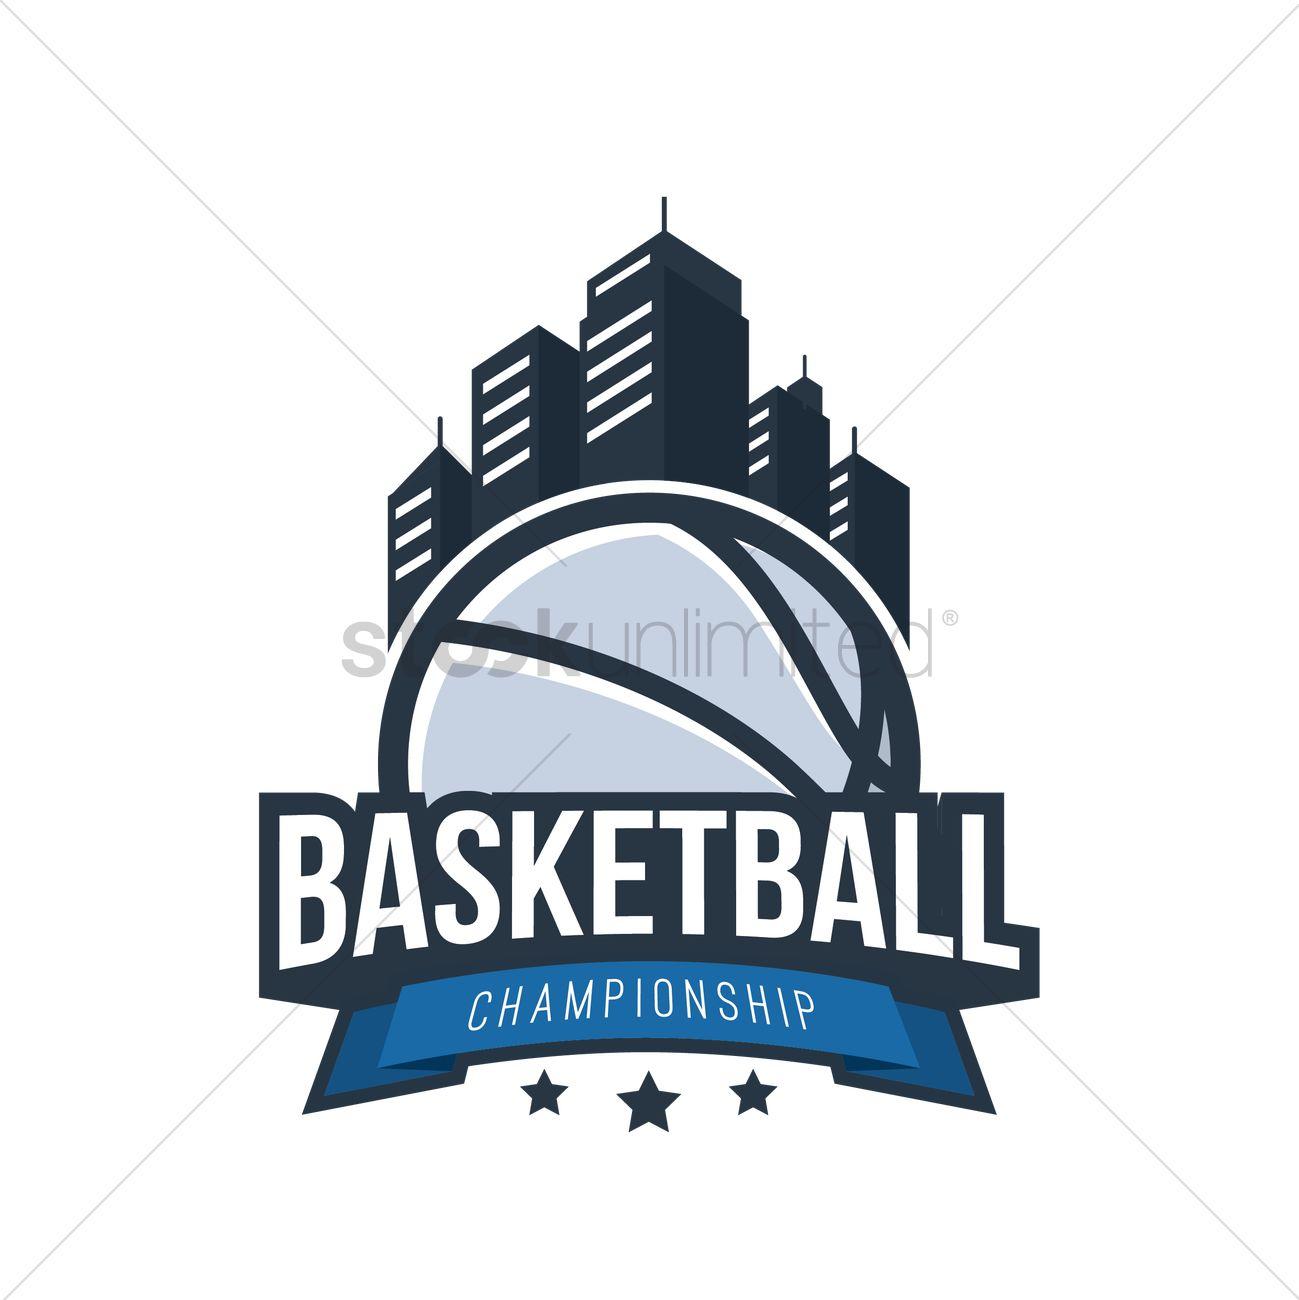 Creative Basketball Logo - Basketball logo element design Vector Image